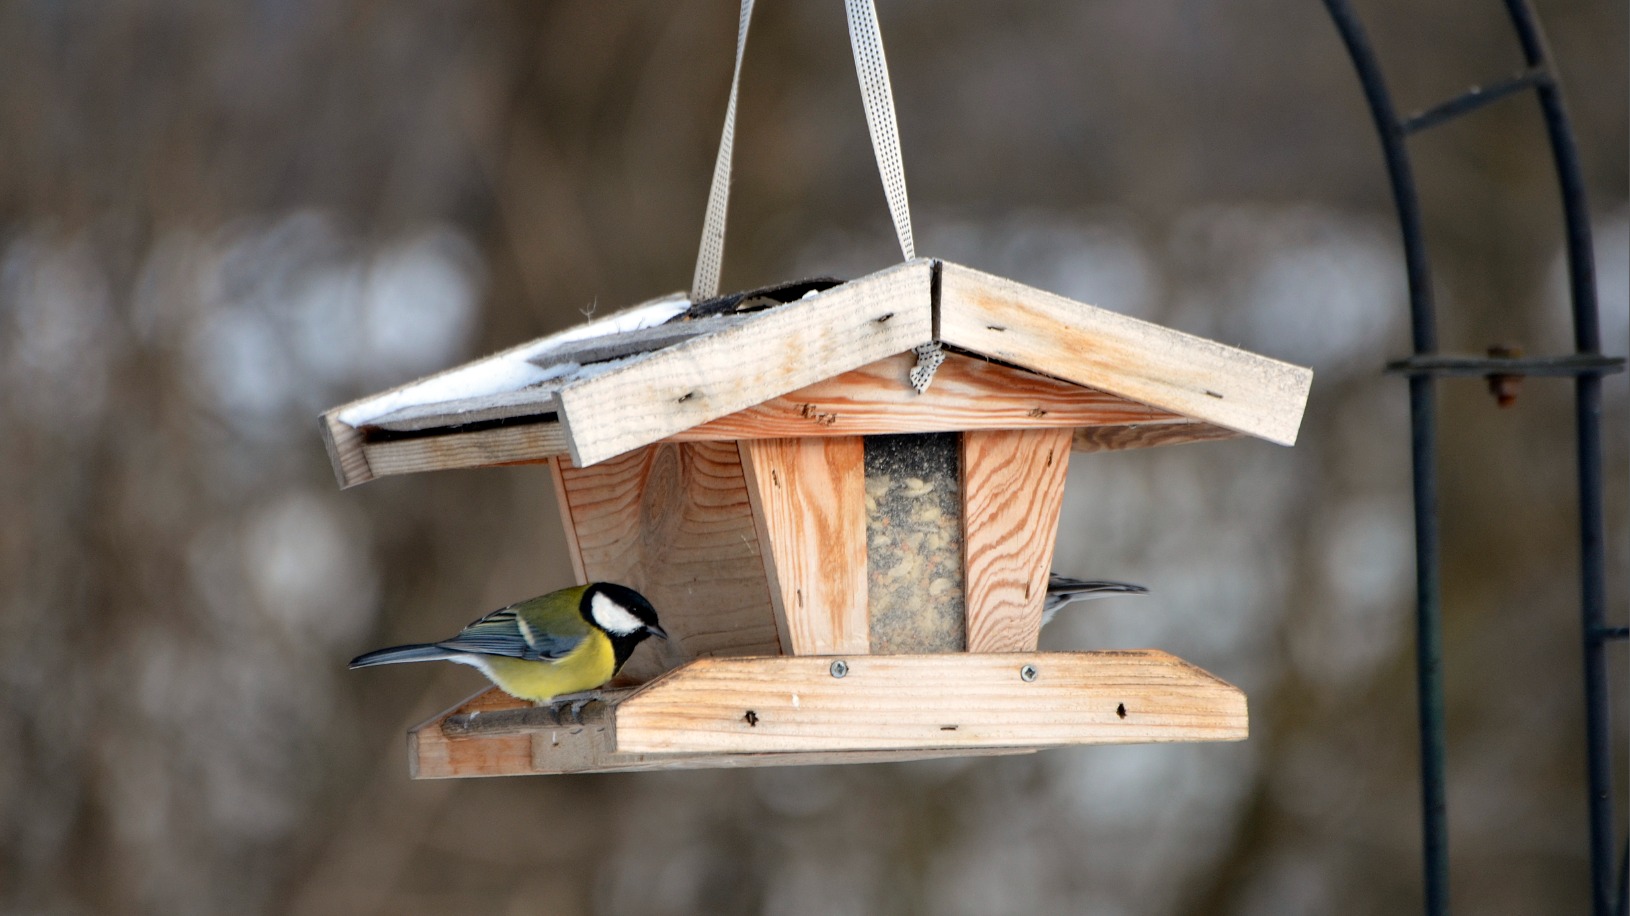 vogelbescherming: 'voederplank voor vogels in tuin kan gevaarlijk zijn'